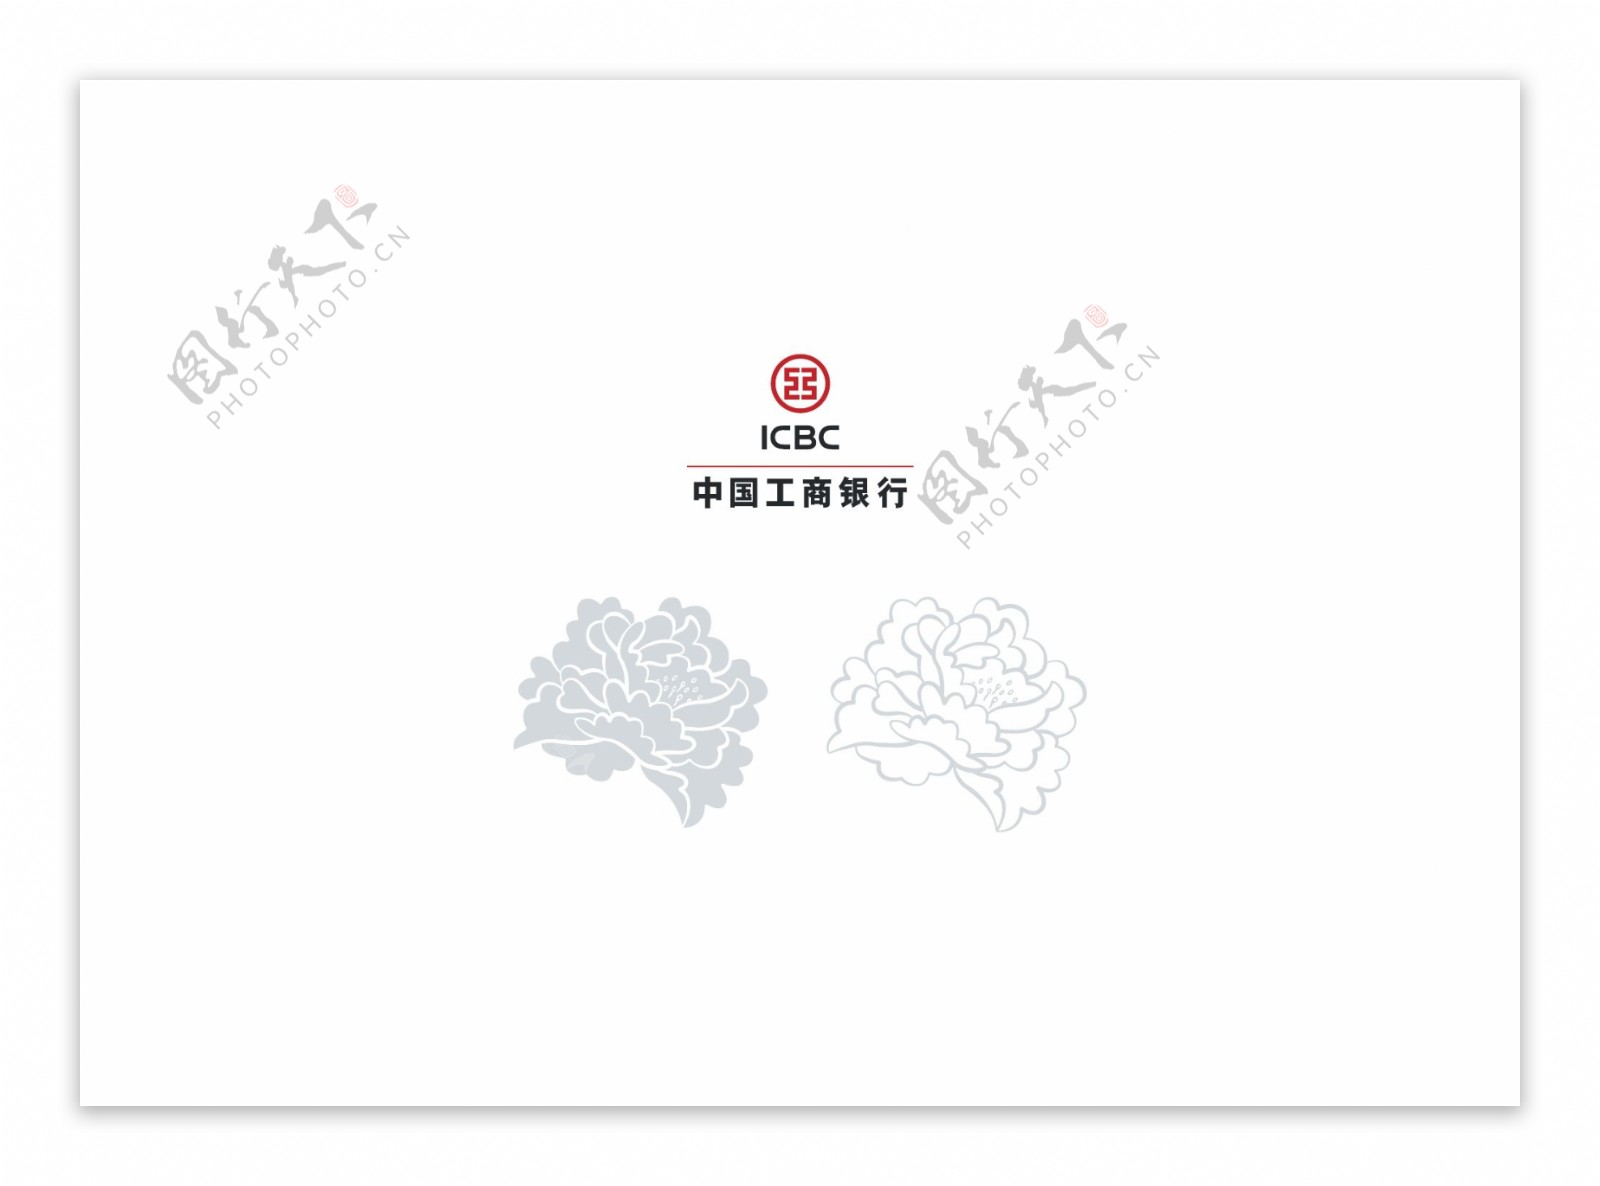 中国工商银行logo辅助图形